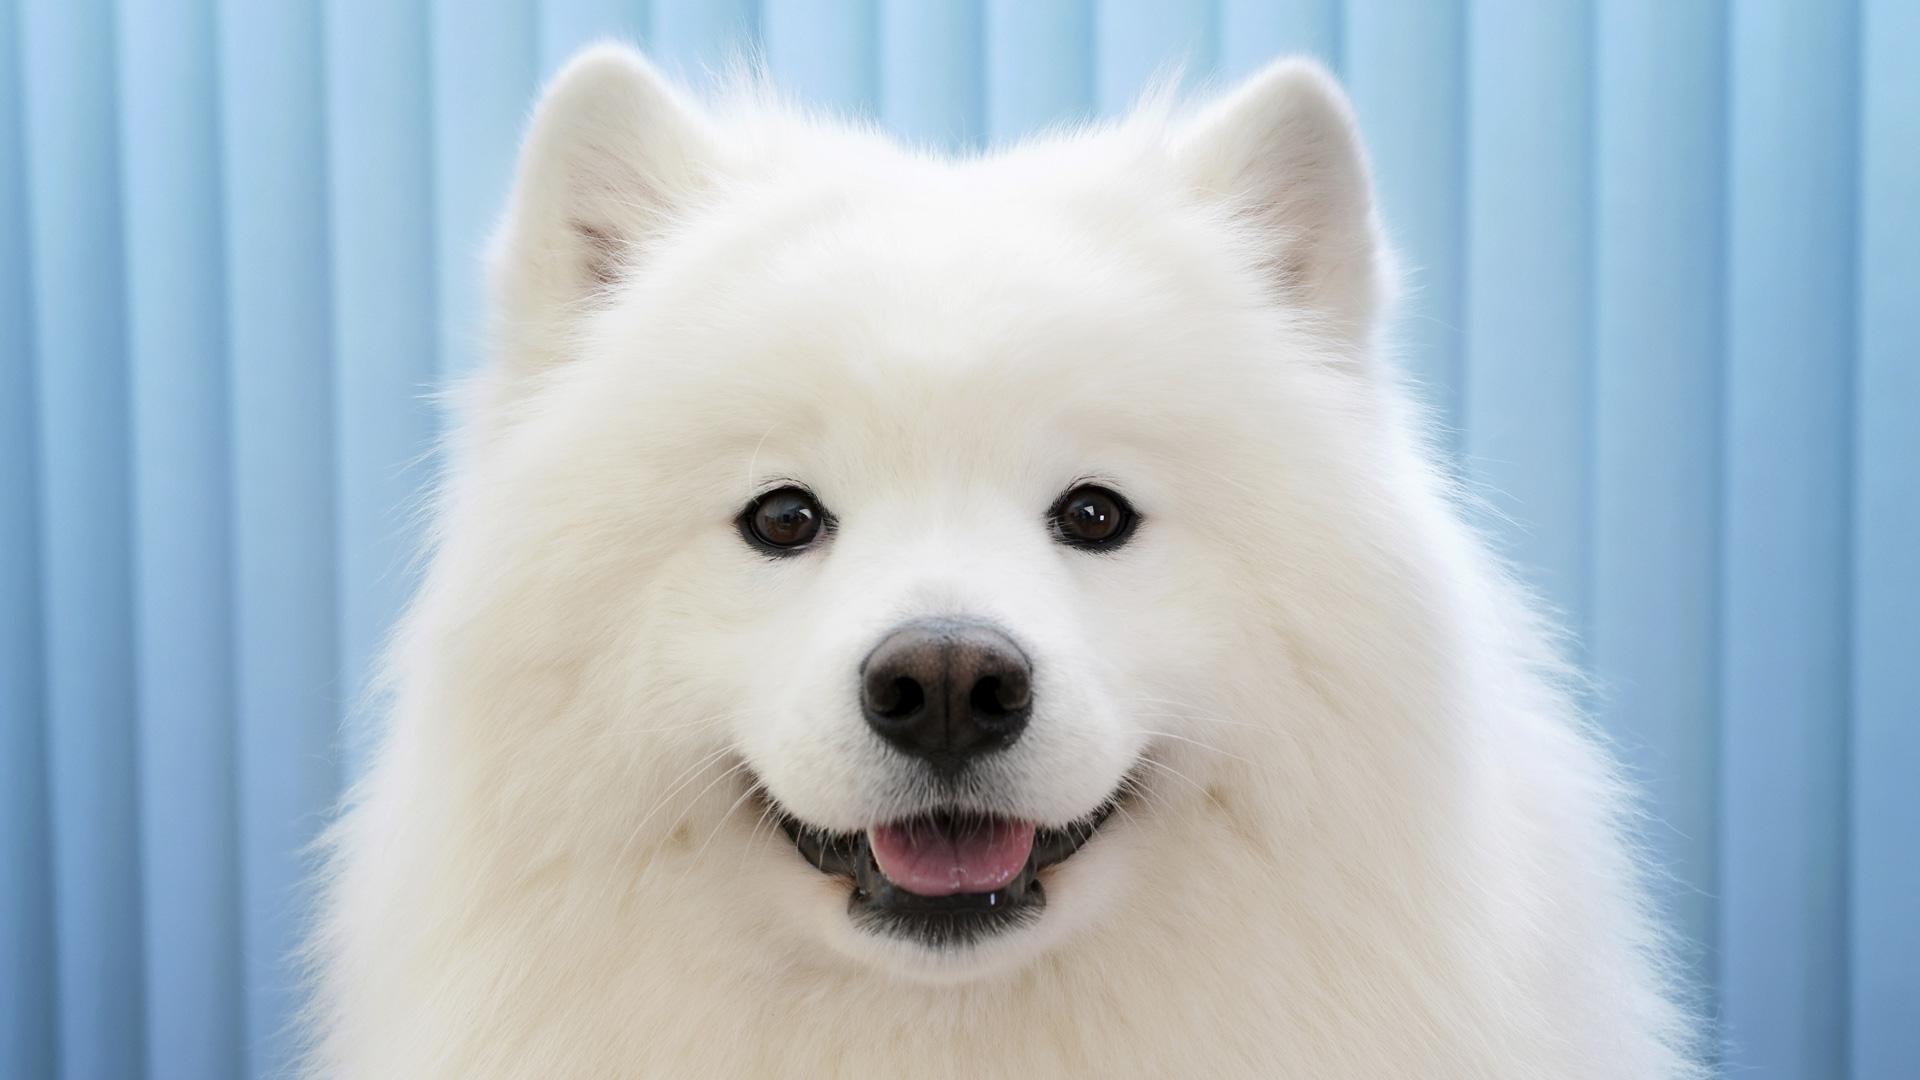 gülümser yüz ifadesine sahip beyaz köpek